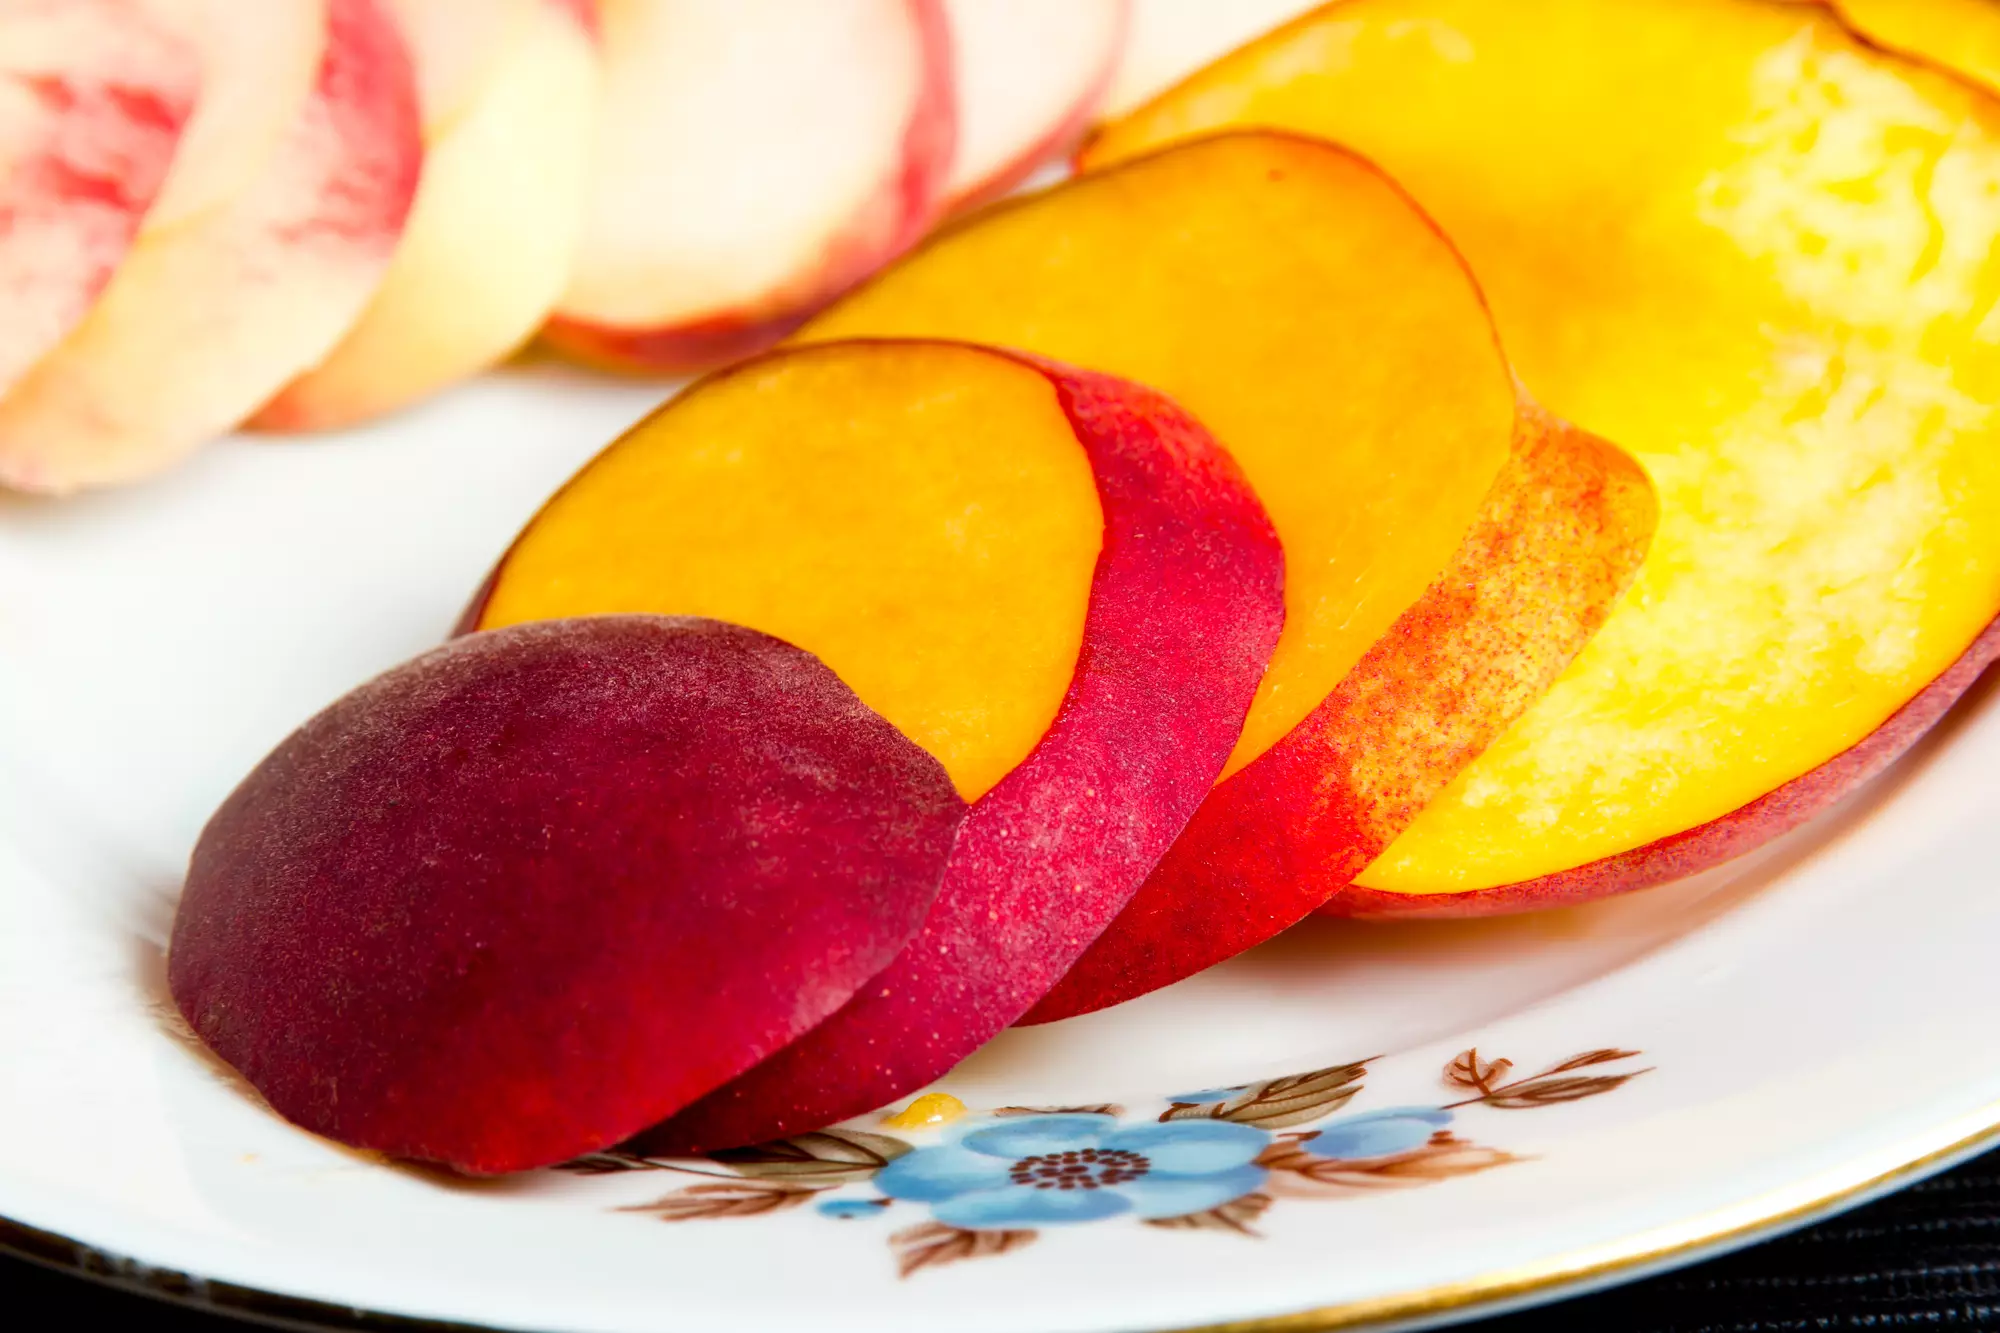 Один персик забезпечує організму ¾ денної норми вітаміну С